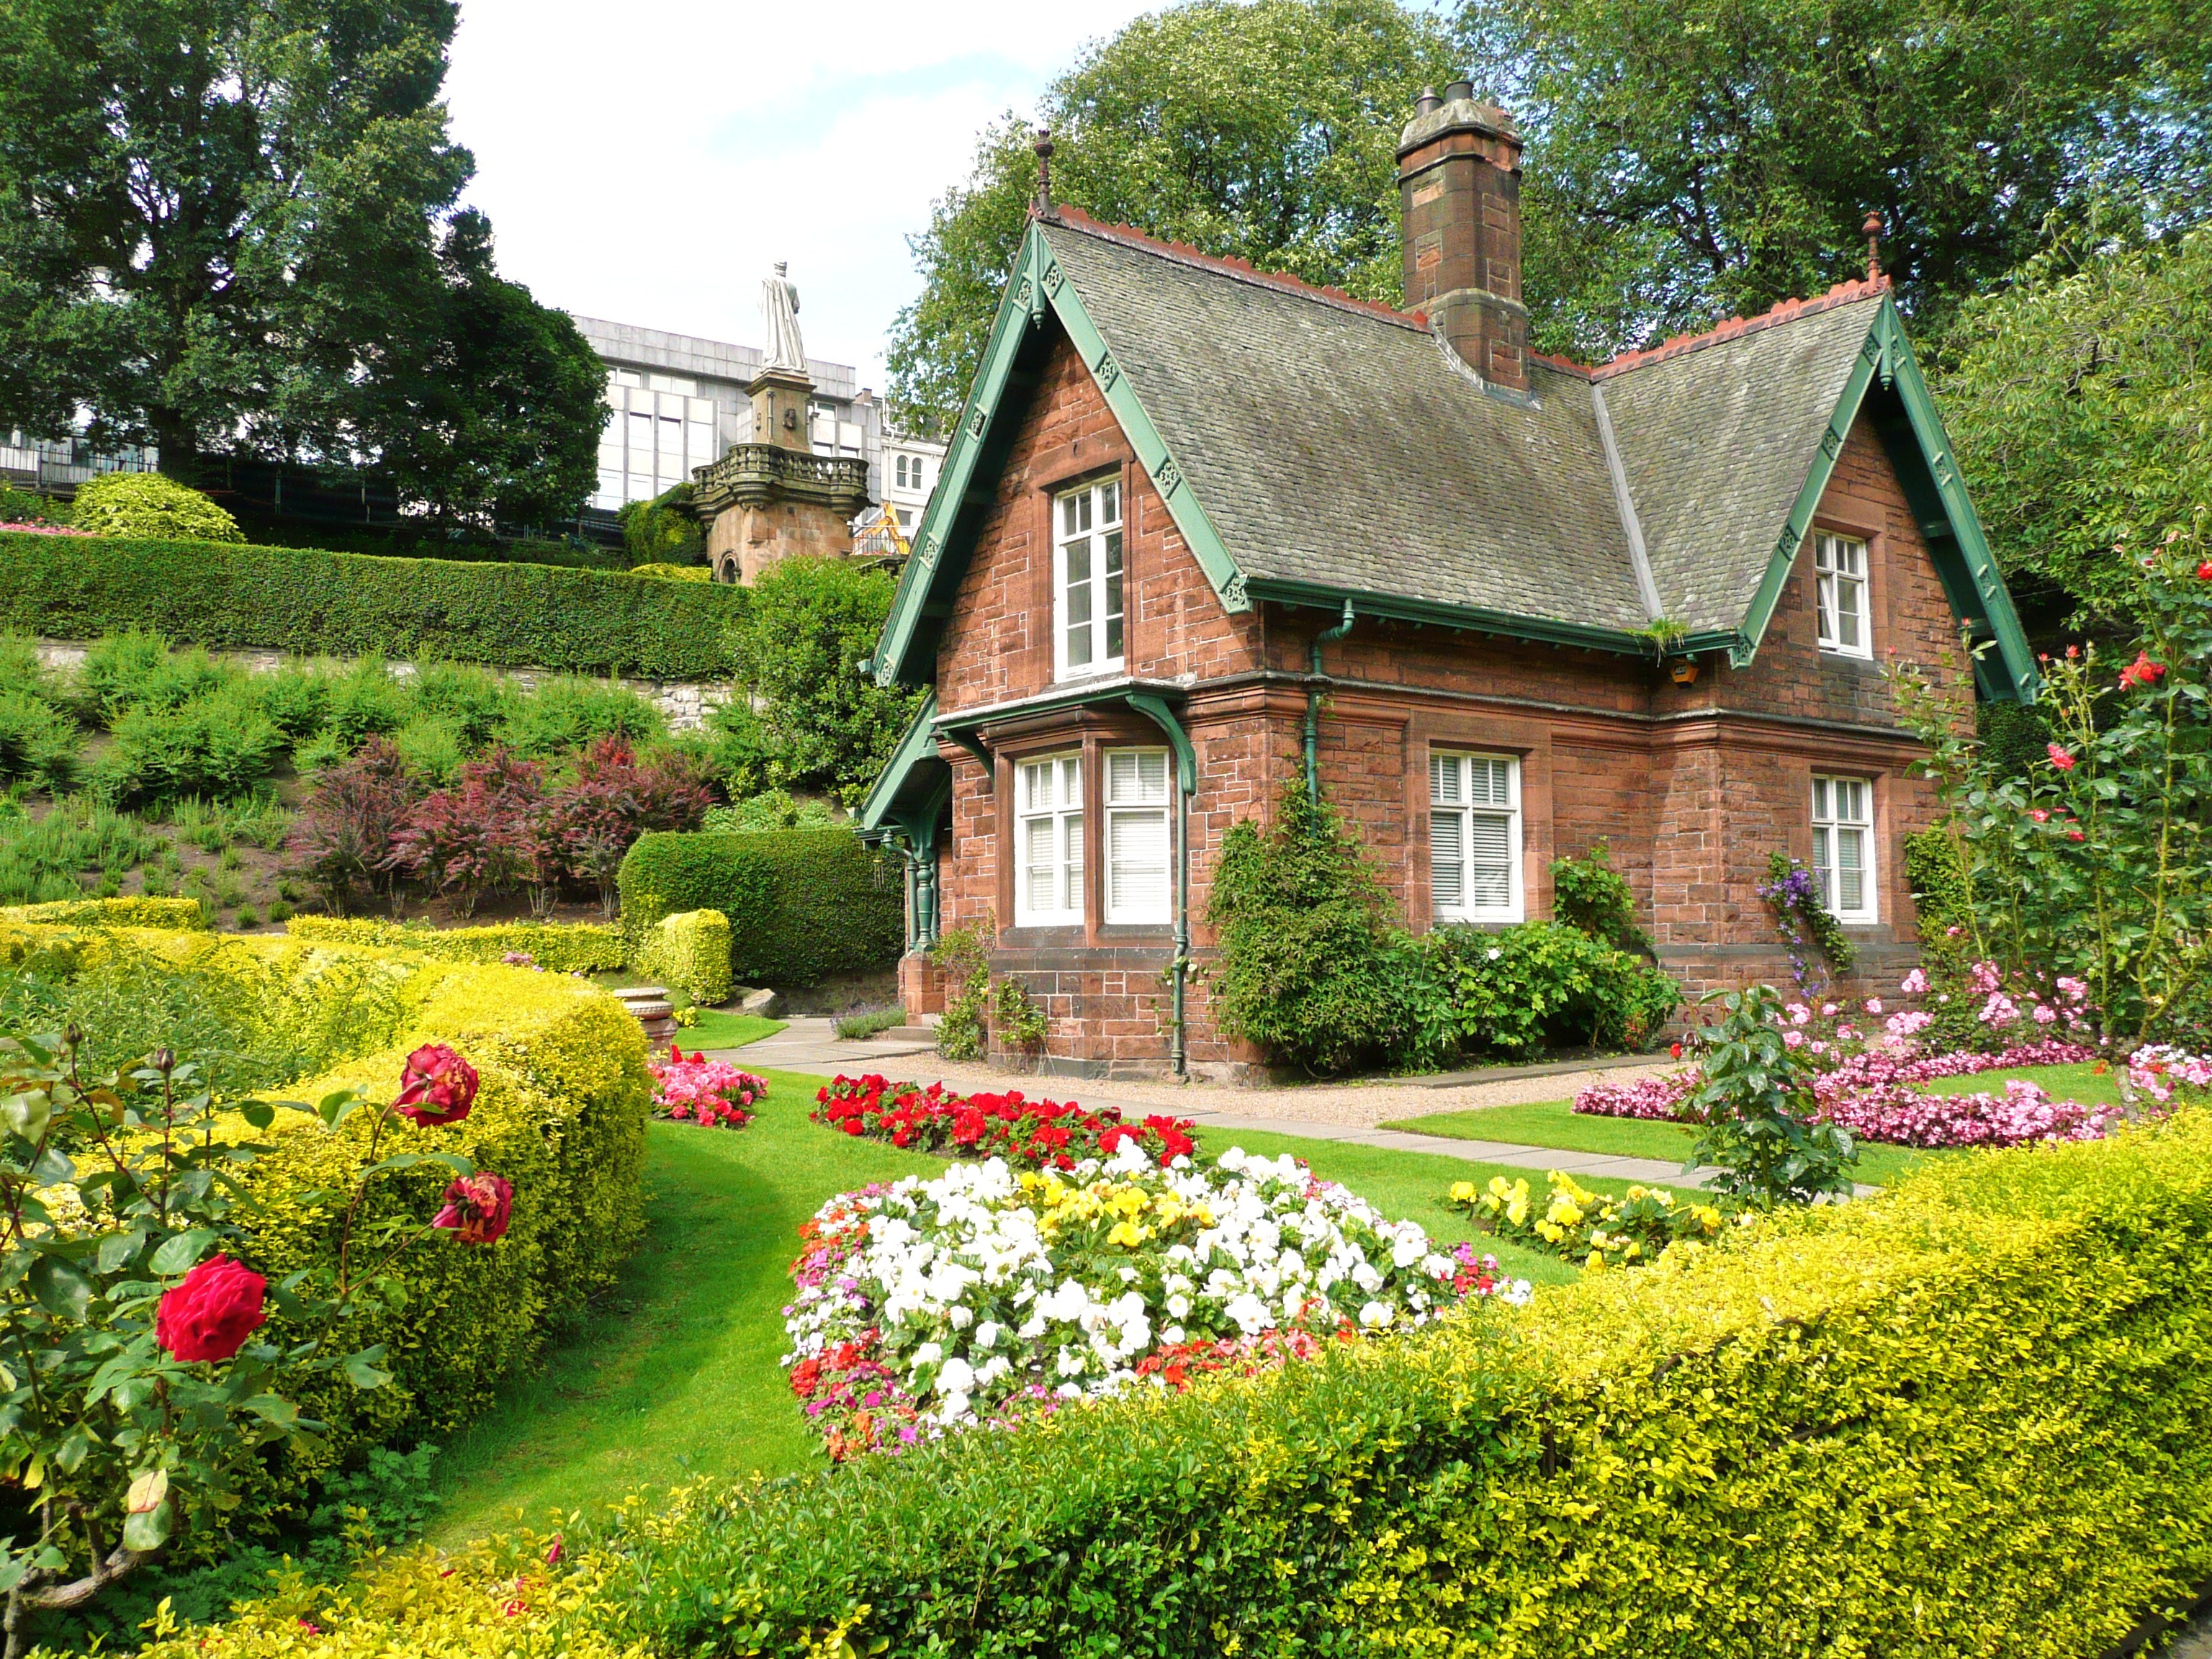 Сад дом забыли загляденье. Английские домики с садом каменный Джейн Остен. Поместья Хэмпшир Англия. Домик садовника Эдинбург. Стиль Тюдор (Tudor Revival Cottage).